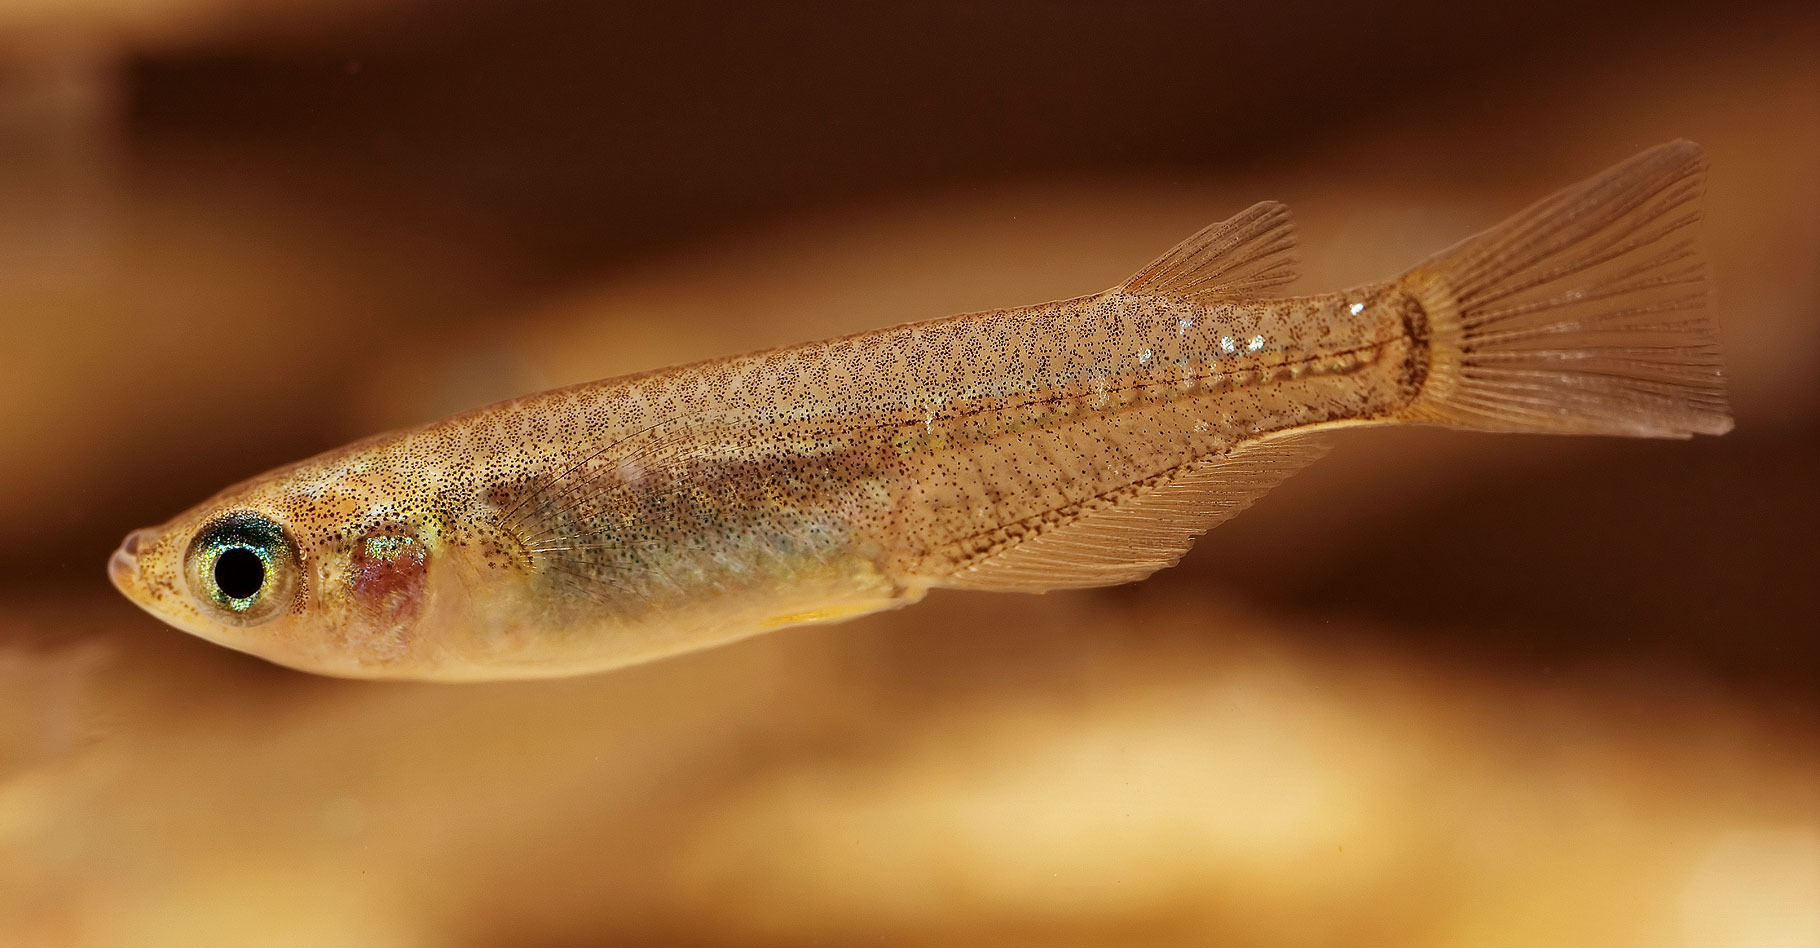 Le&nbsp;médaka (Oryzias latipes) est une espèce de poisson originaire d'Asie du sud-est.&nbsp;© Seotaro - CC BY-SA 3.0